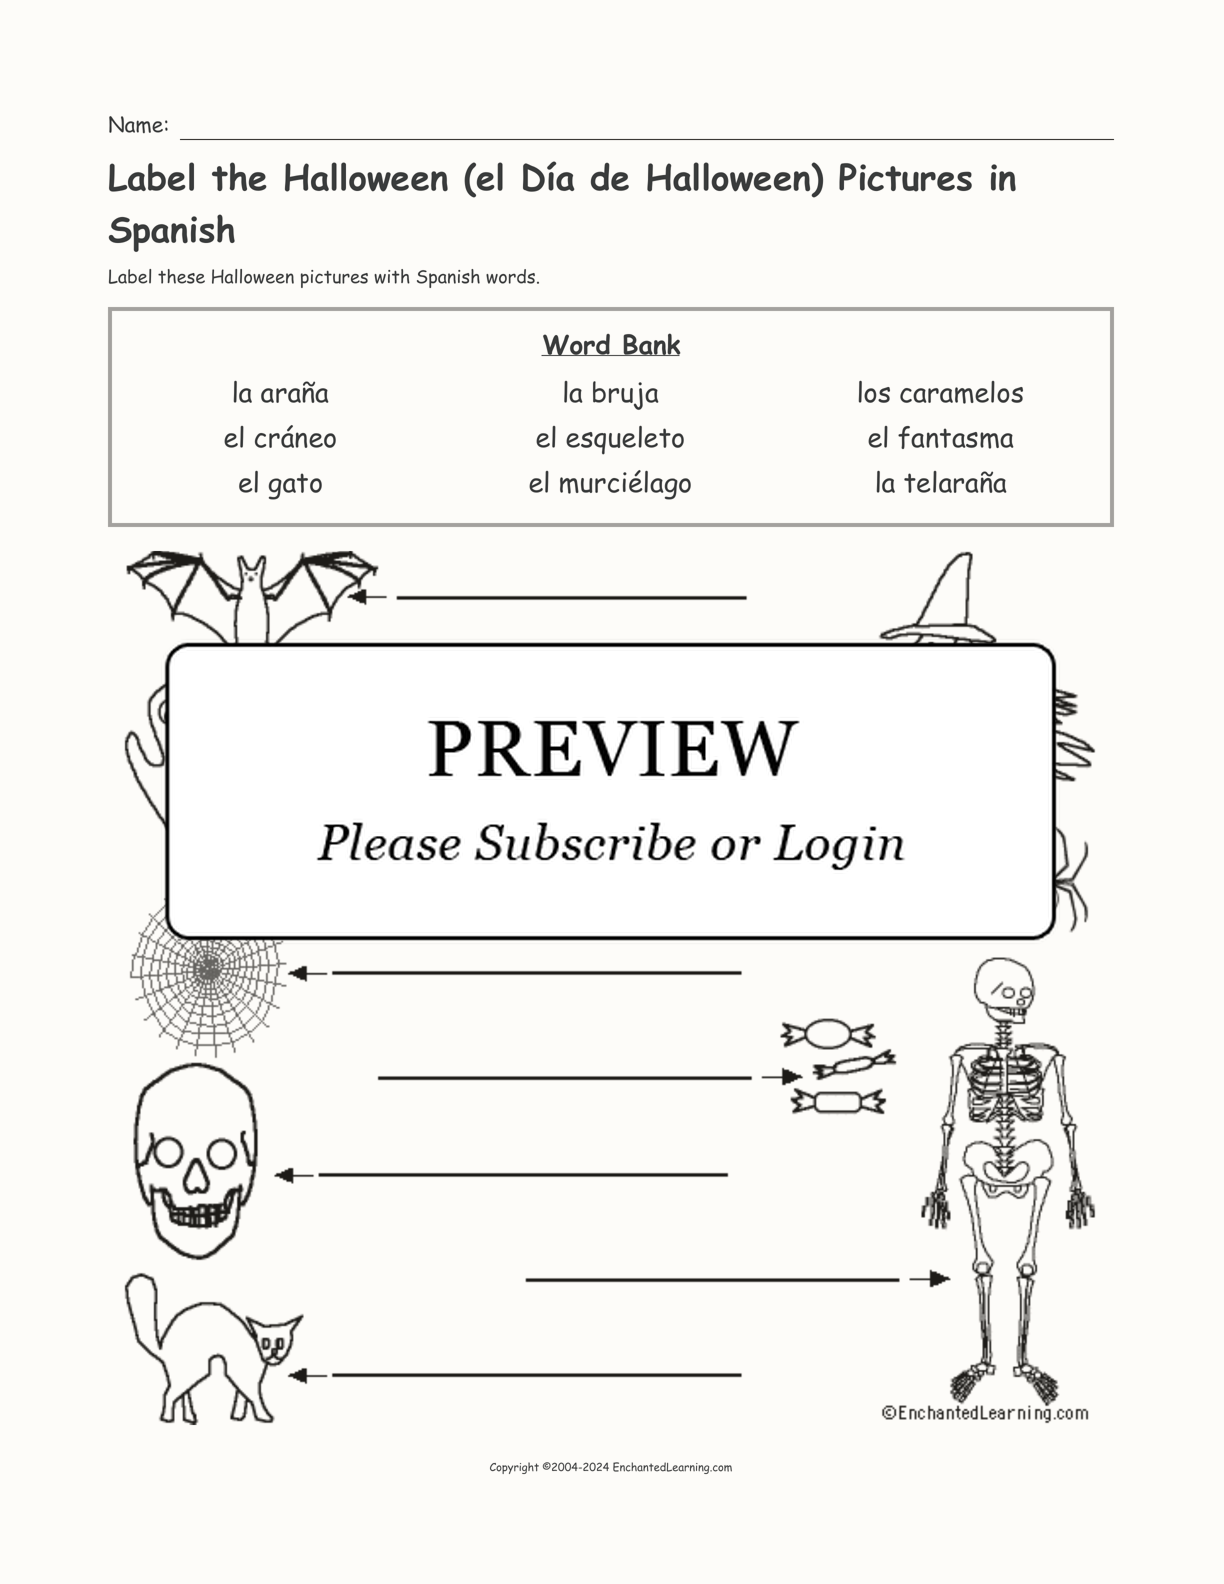 Label the Halloween (el Día de Halloween) Pictures in Spanish interactive worksheet page 1